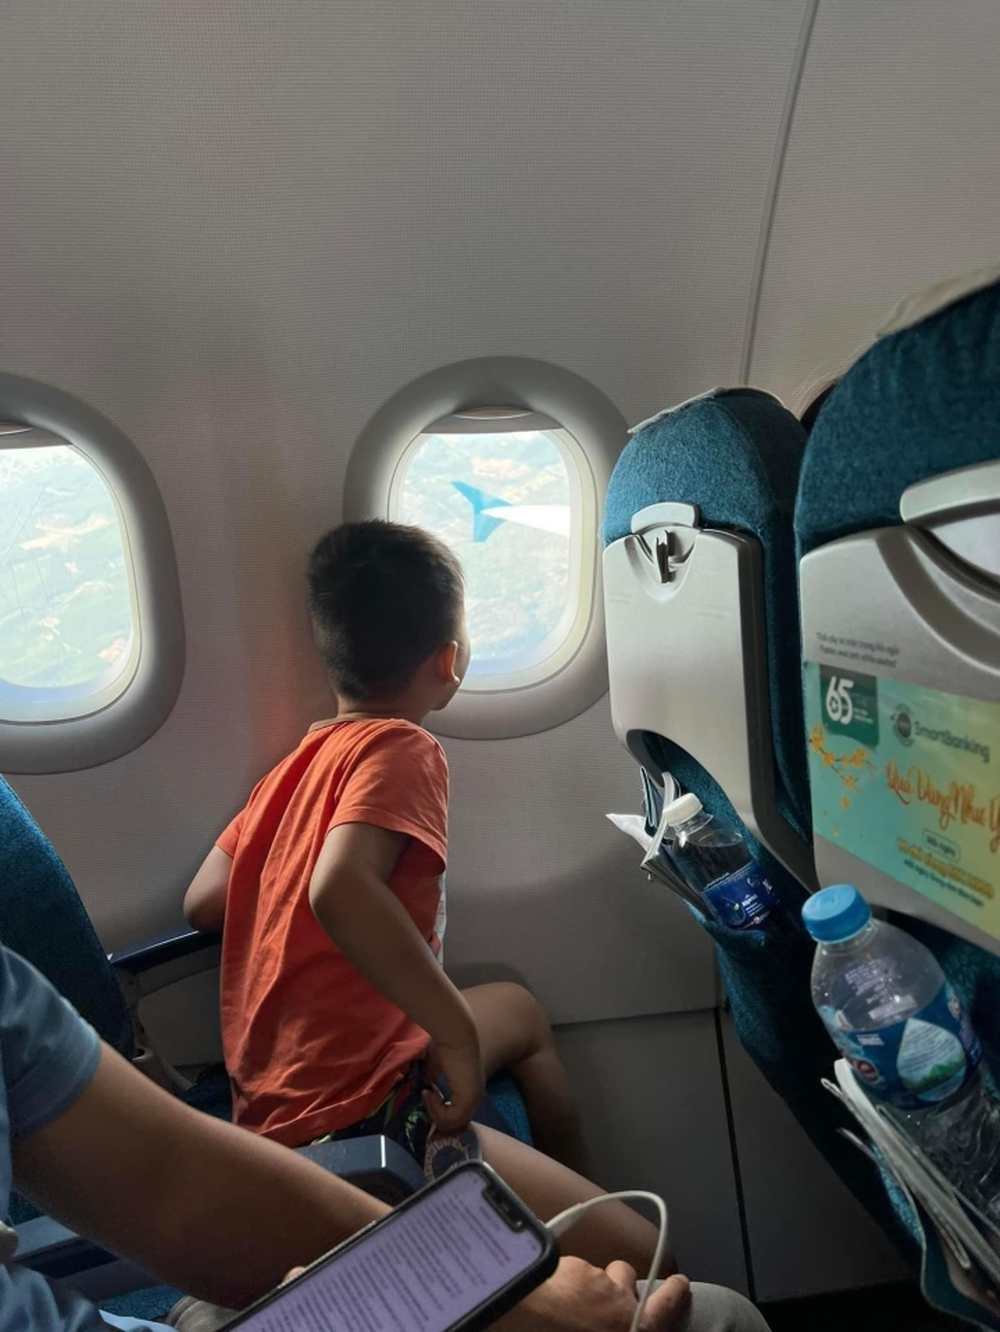 Màn ‘giao dịch’ của cậu bé lần đầu đi máy bay không được ngồi gần cửa sổ gây sốt - ảnh 2